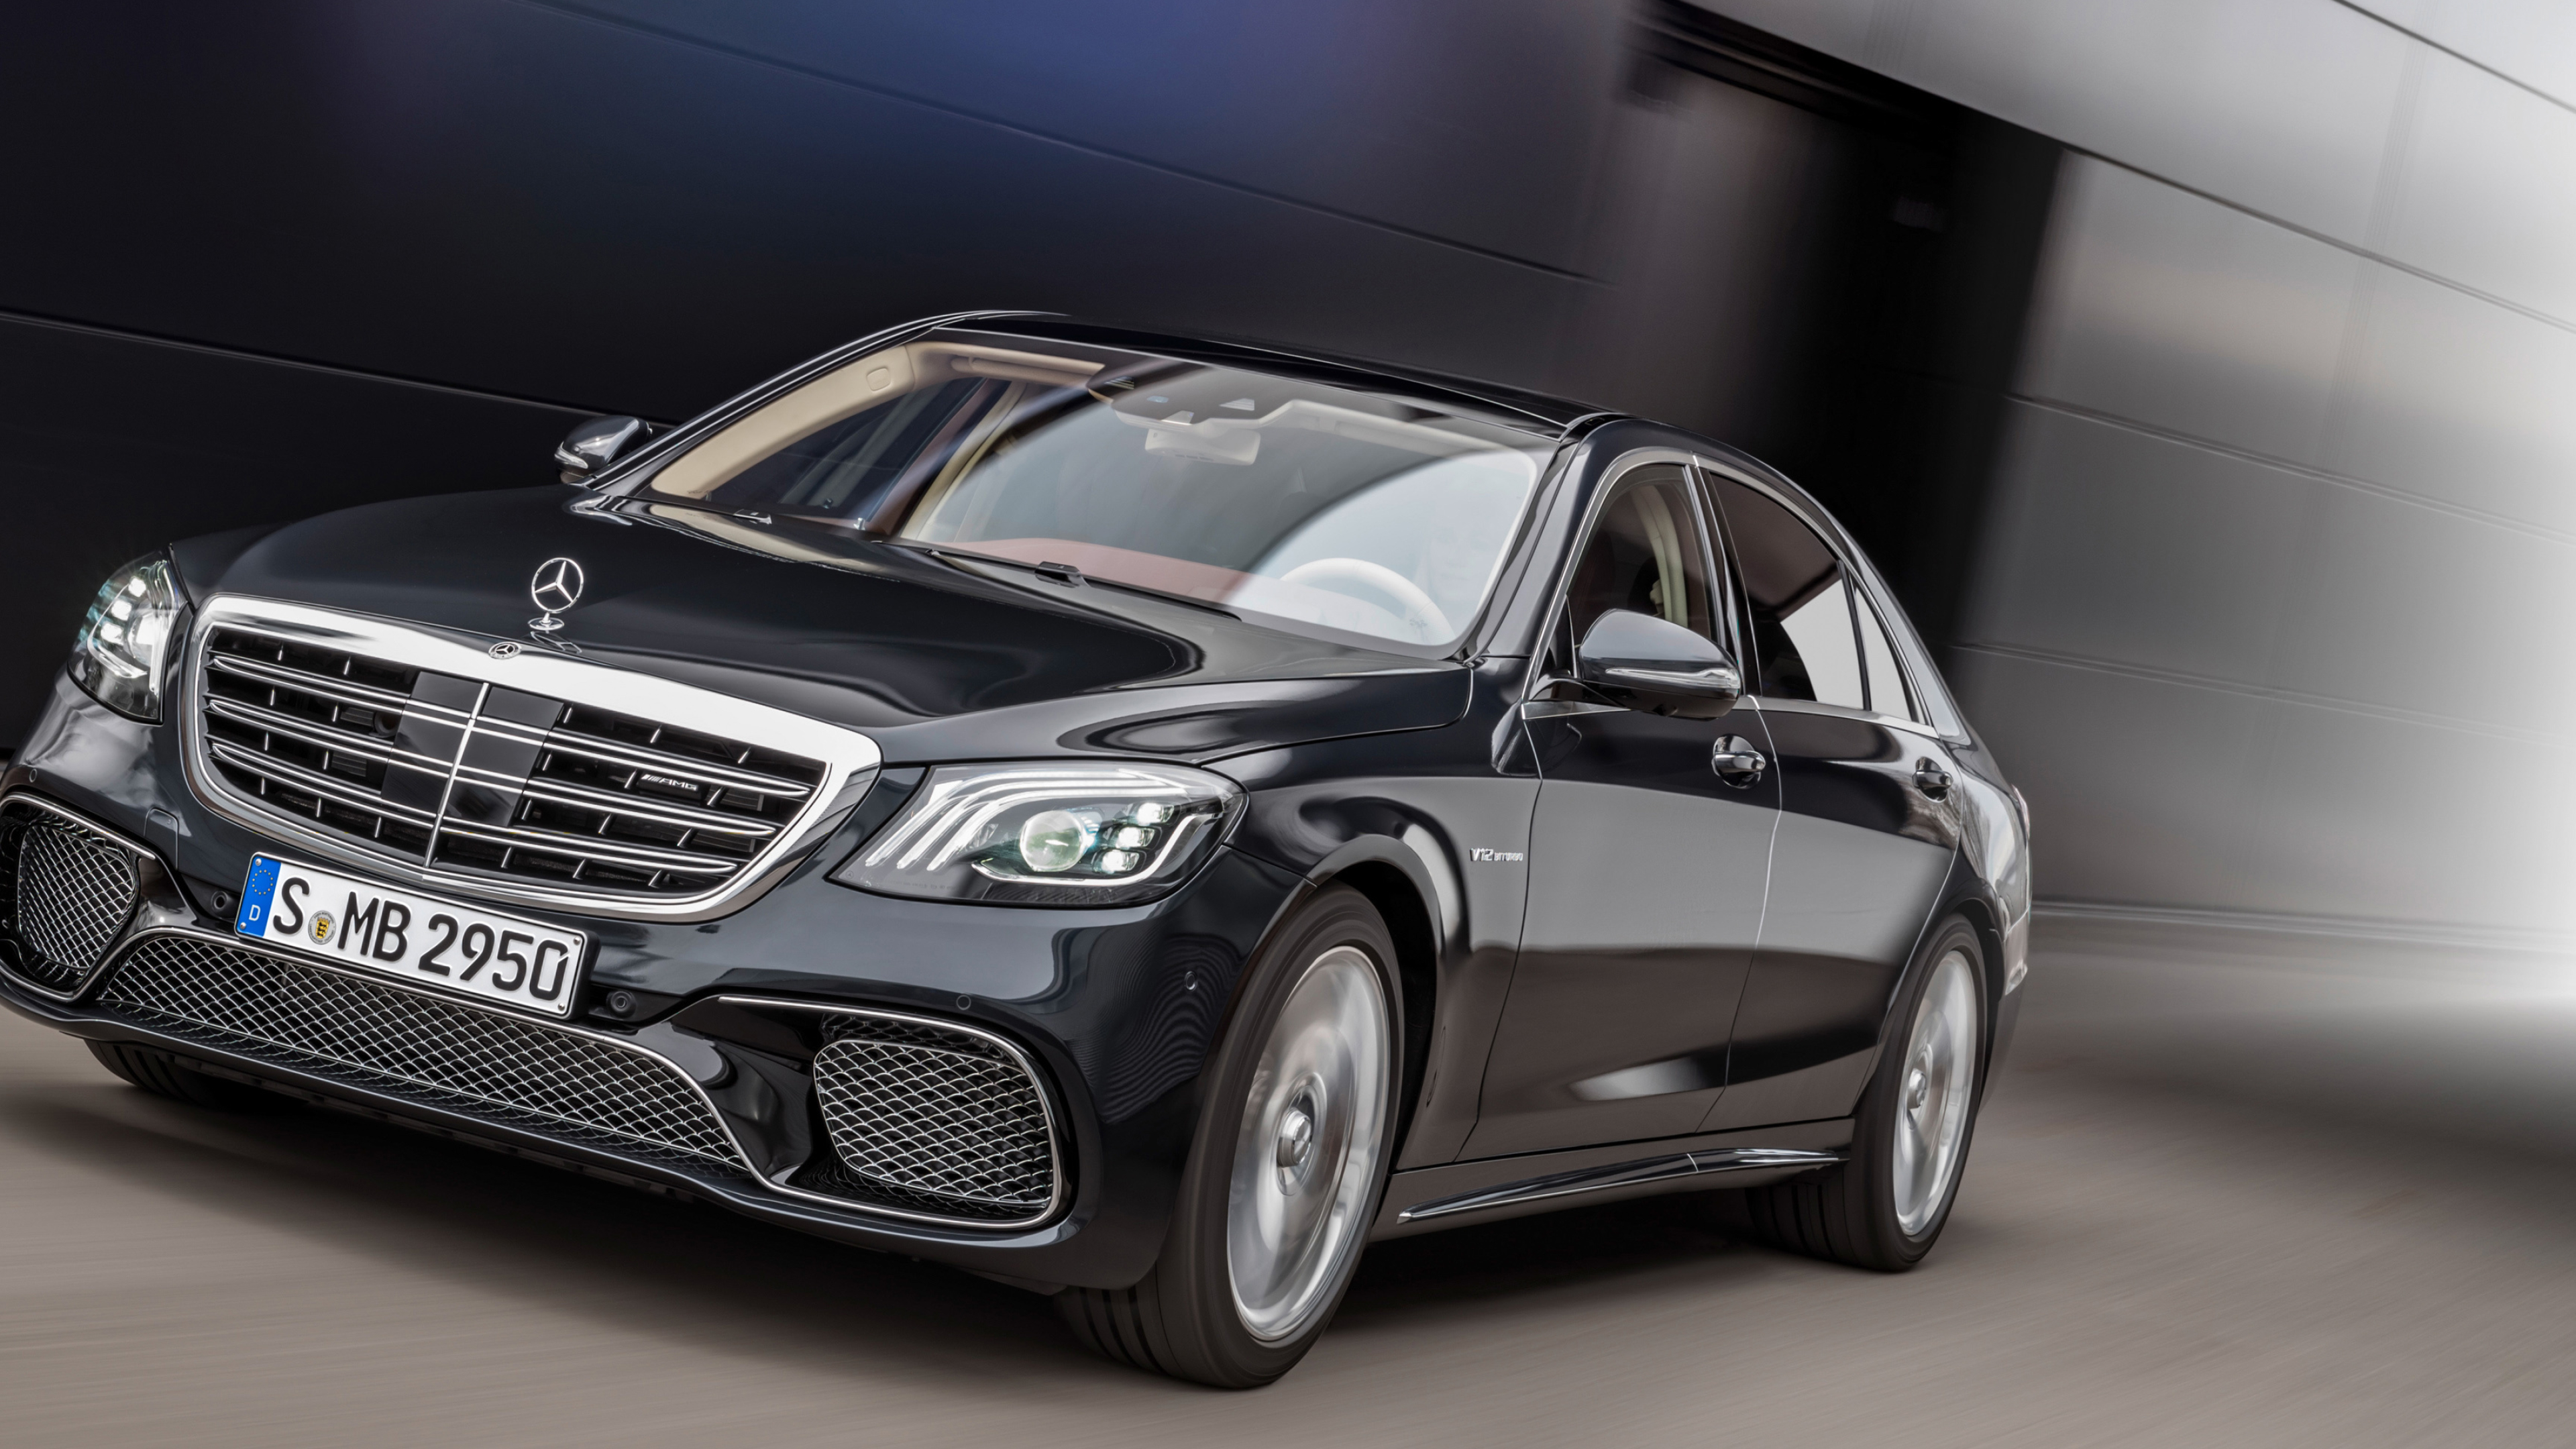 Mercedes-Benz S-Class, High-end luxury cars, Ultra HD wallpapers, Sleek design, 3840x2160 4K Desktop